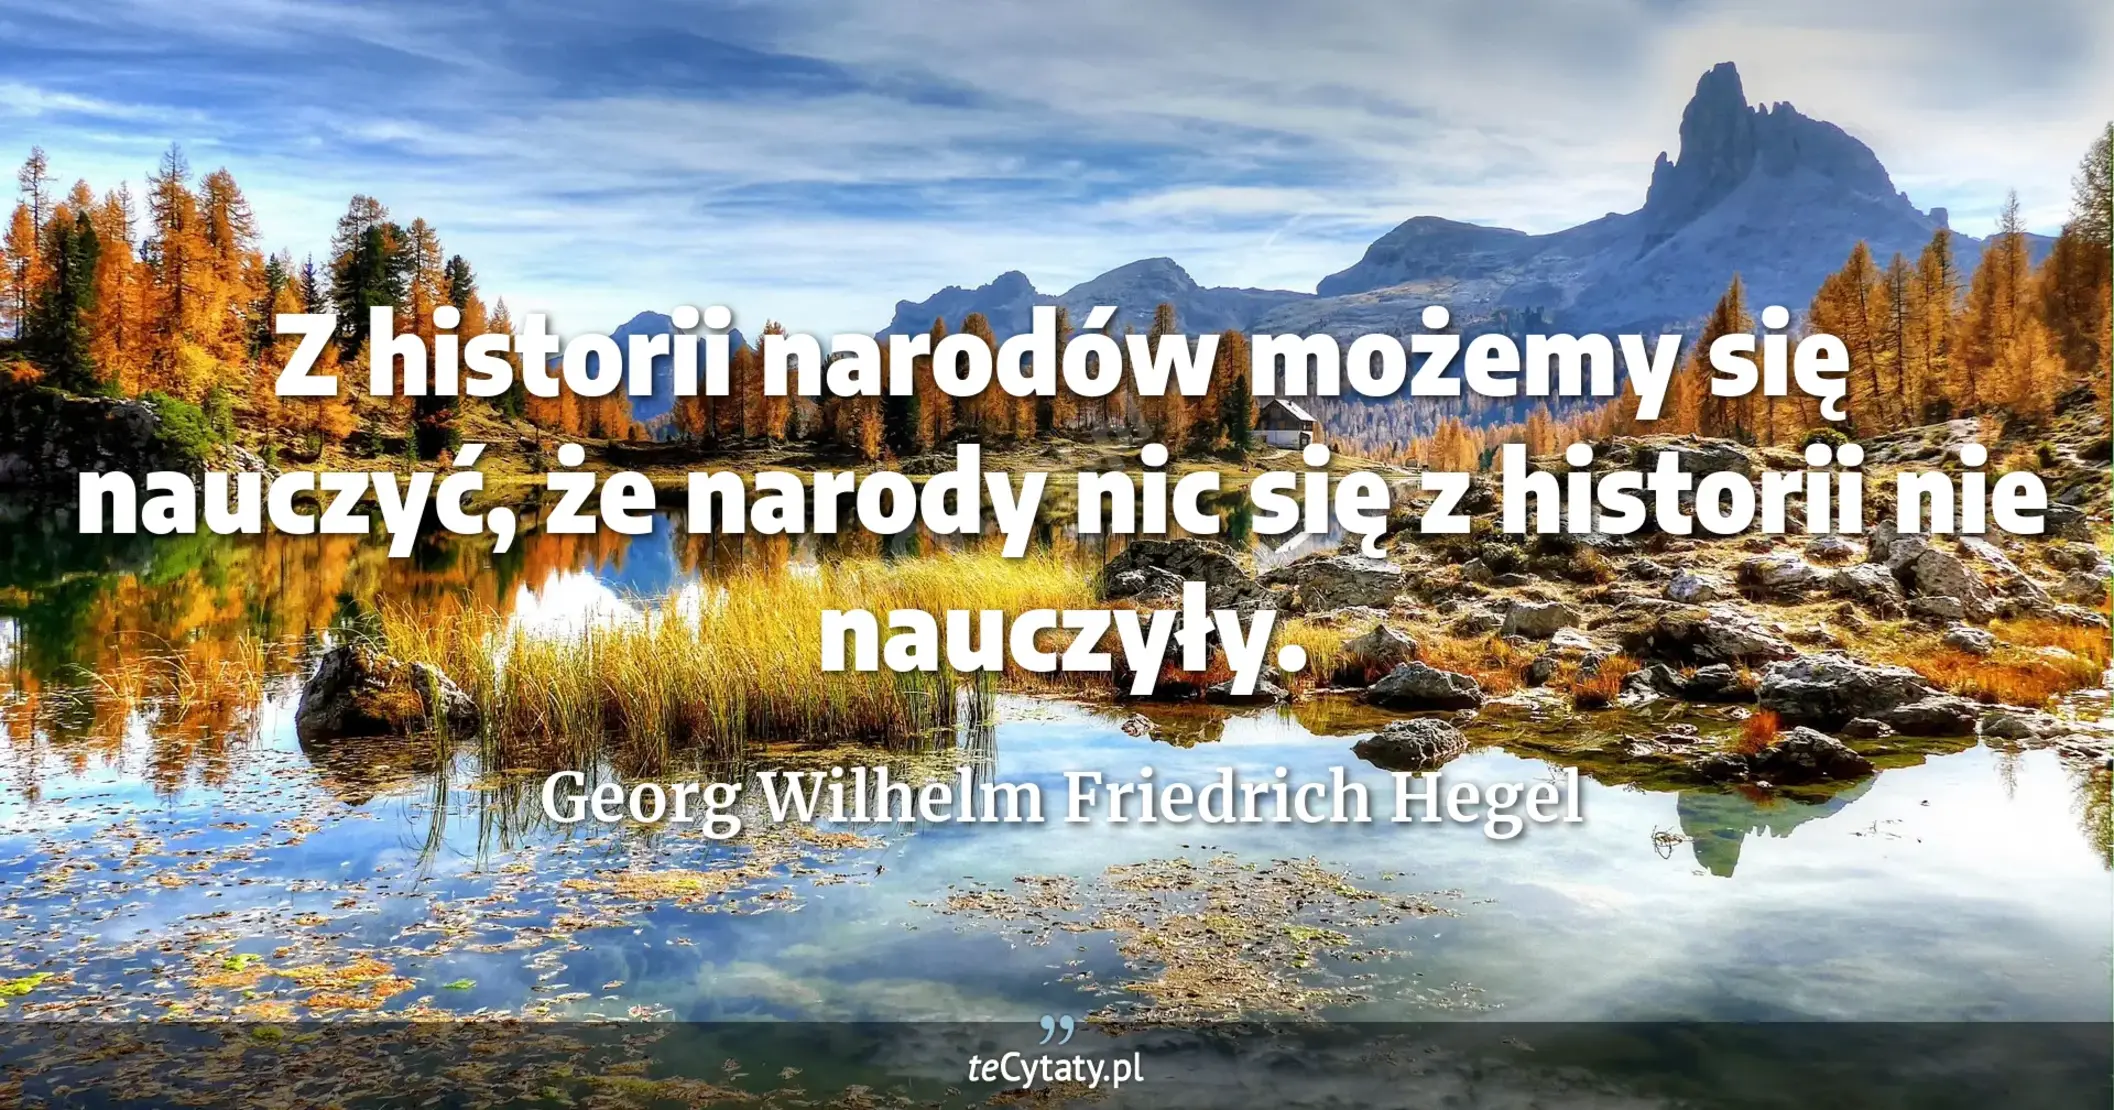 Z historii narodów możemy się nauczyć, że narody nic się z historii nie nauczyły. - Georg Wilhelm Friedrich Hegel